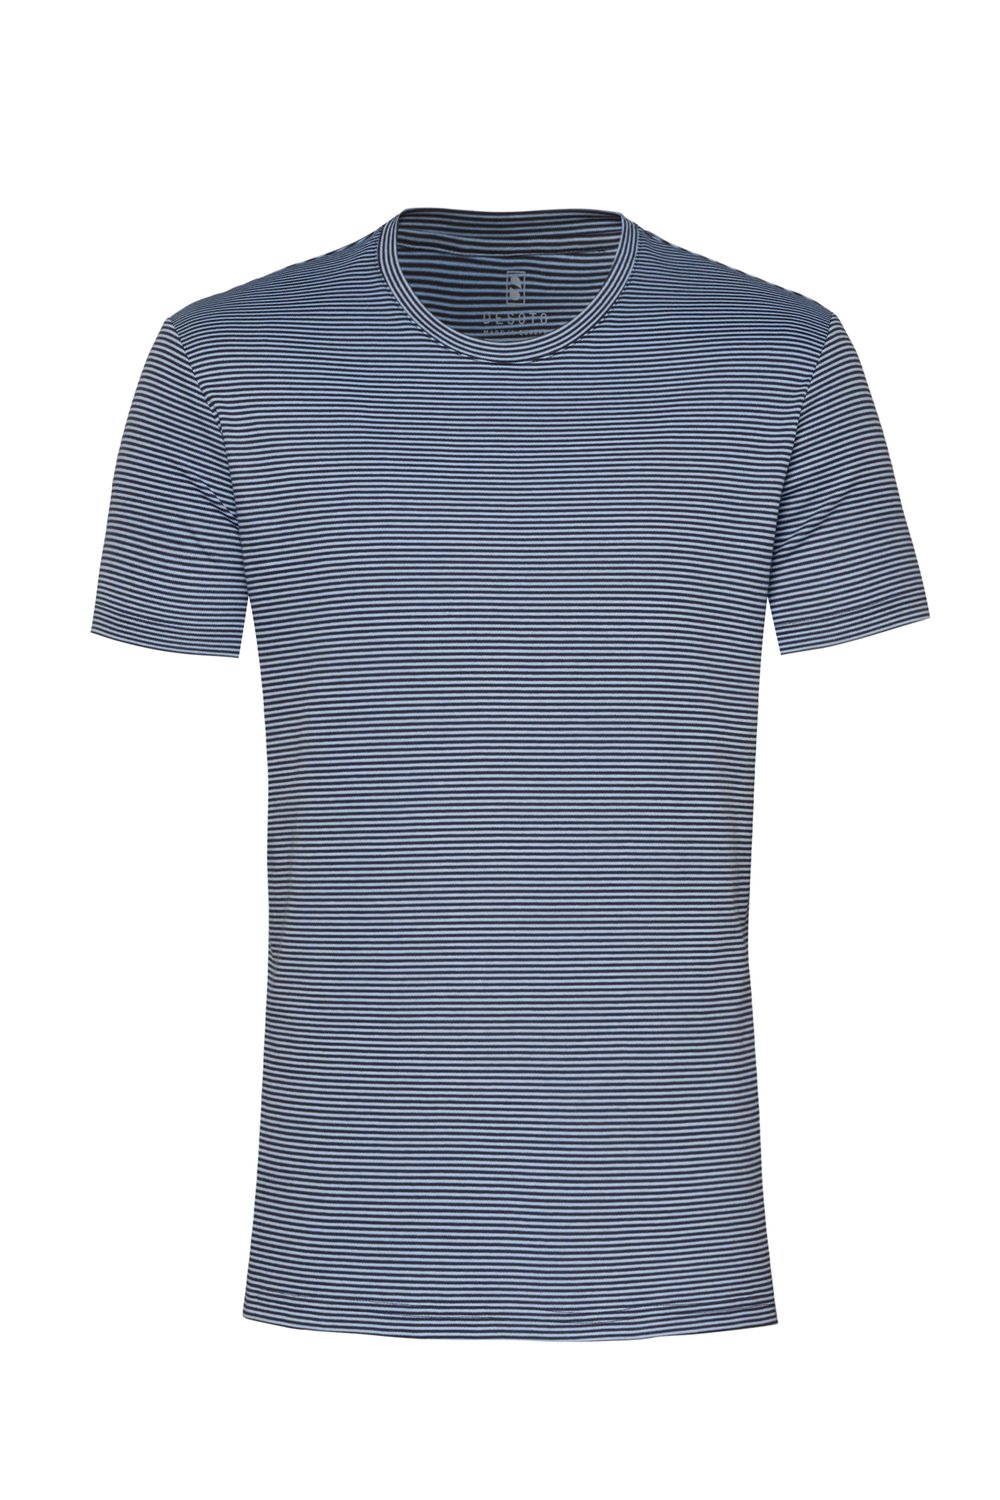 T-Shirt Roundneck Desoto  krótki rękaw skw 64070-3 573-jasnoniebieskie paseczki